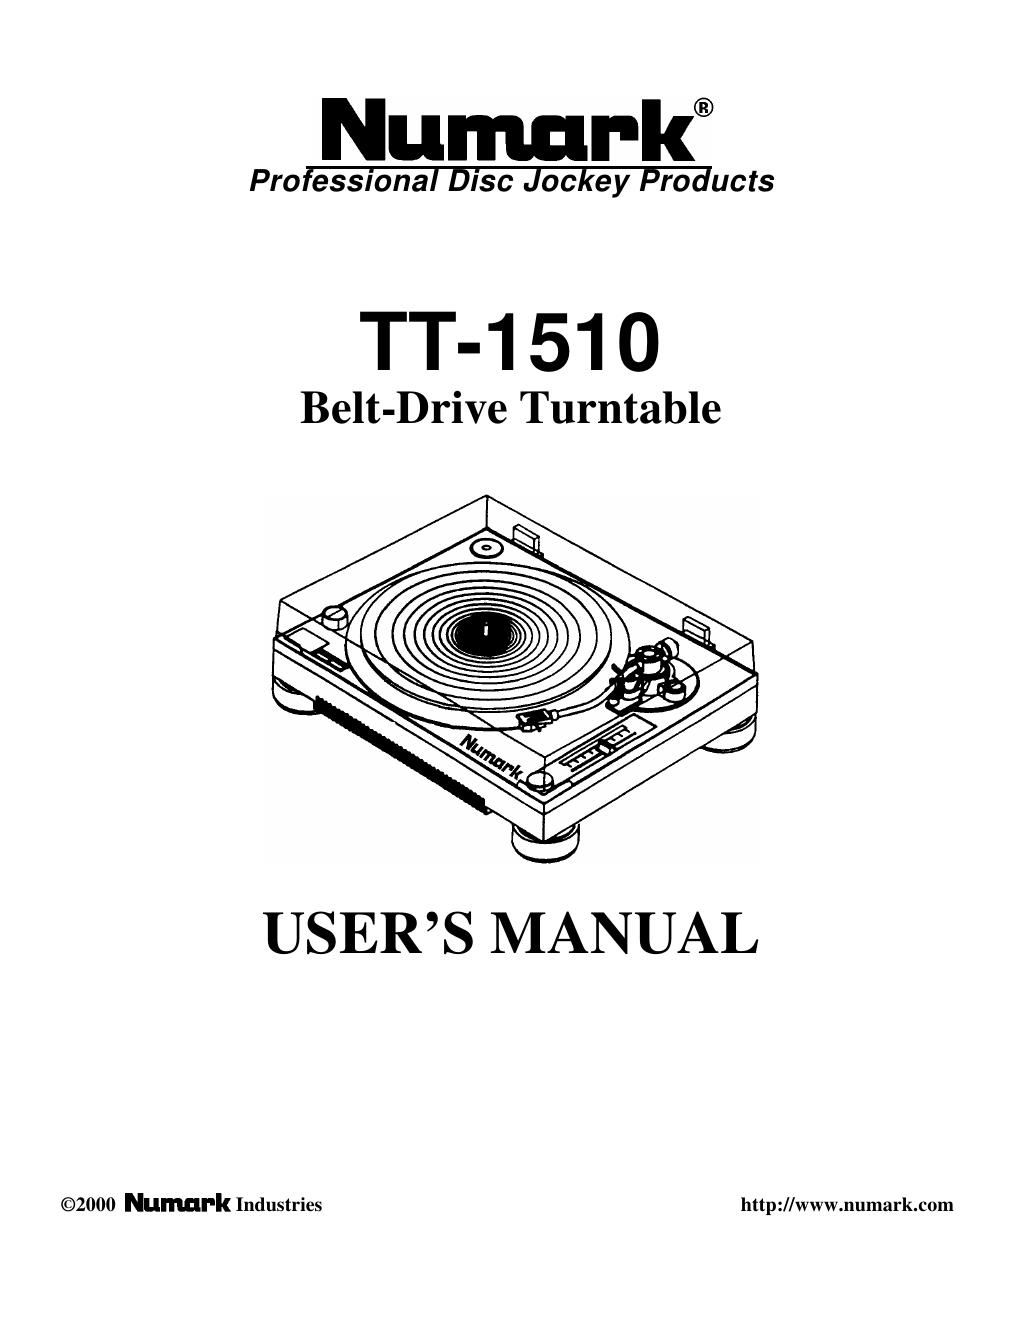 numark tt 1510 owners manual